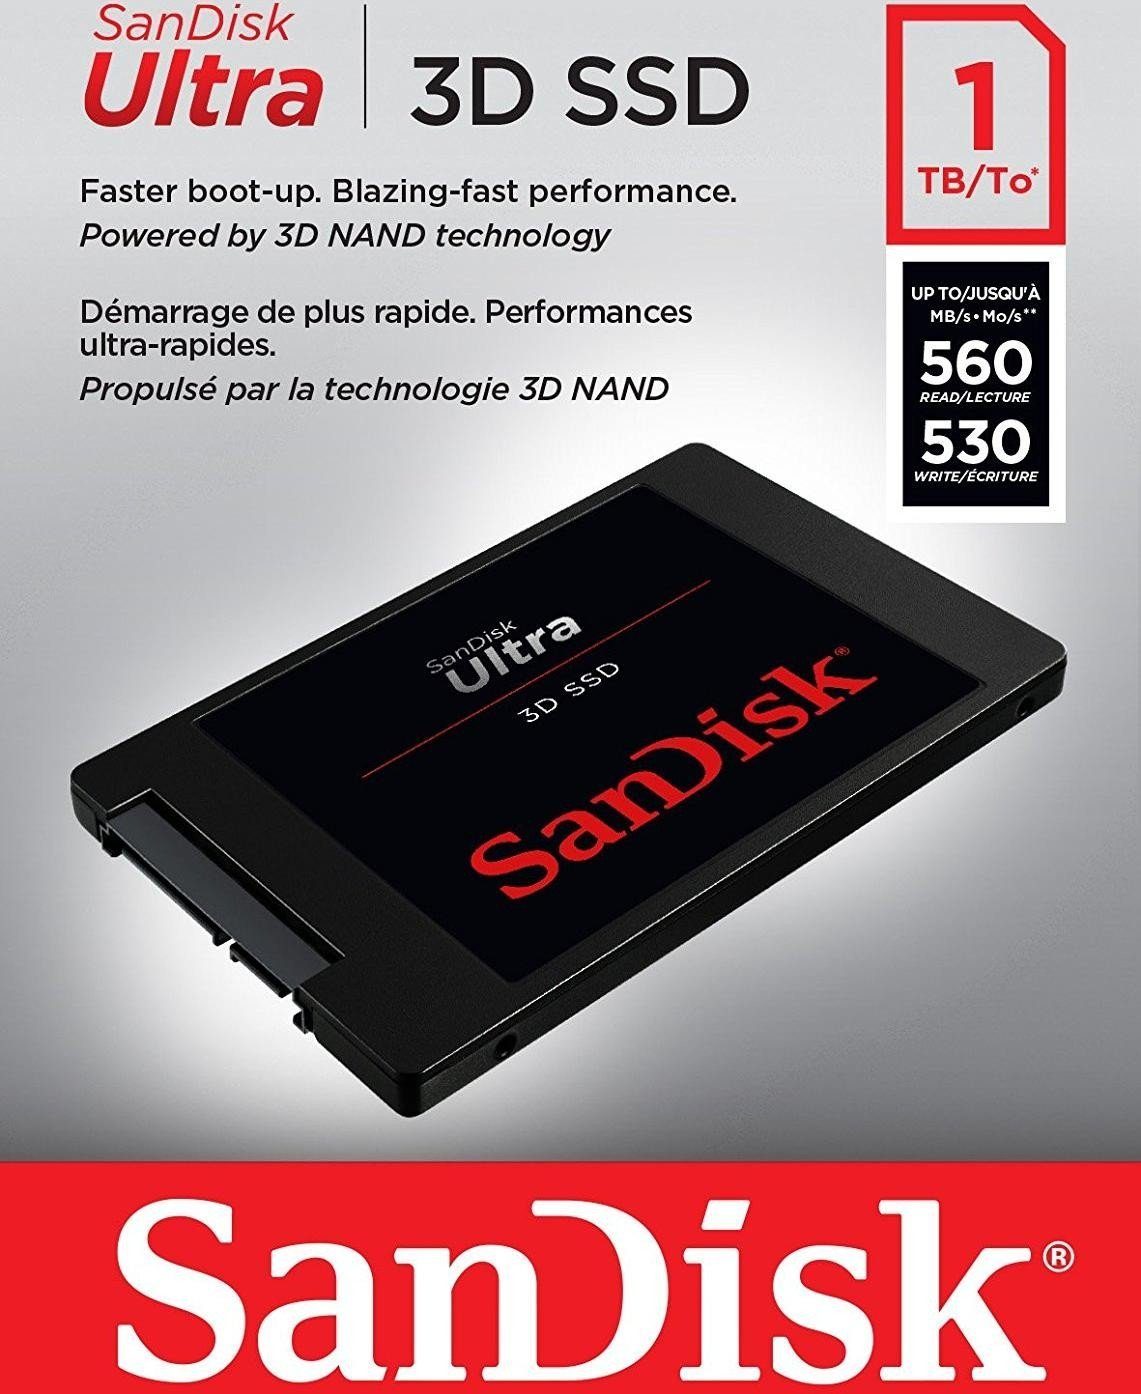 SSD MB/S 560 SSD (1TB) 530 Lesegeschwindigkeit, 3D 2,5"" Ultra Schreibgeschwindigkeit interne Sandisk MB/S